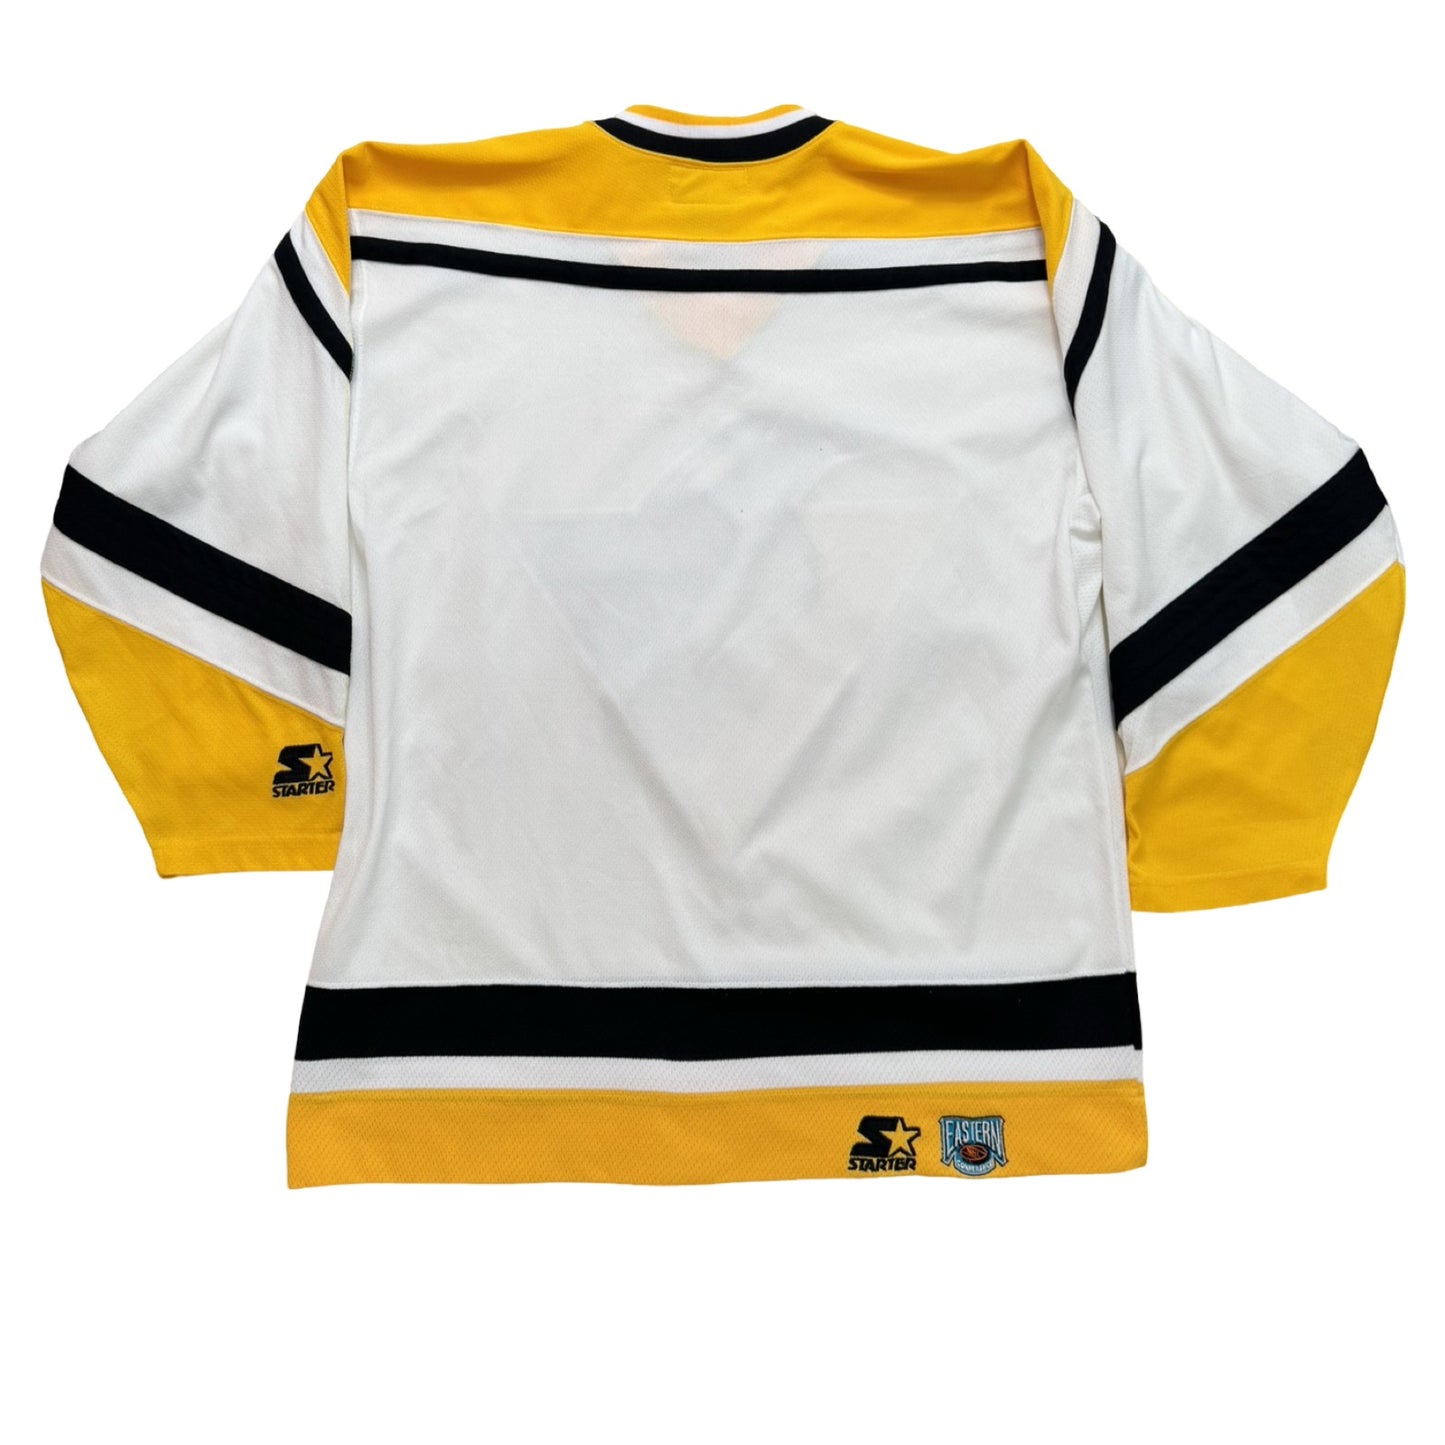 Vintage Starter Pittsburgh Penguins Jersey Size L